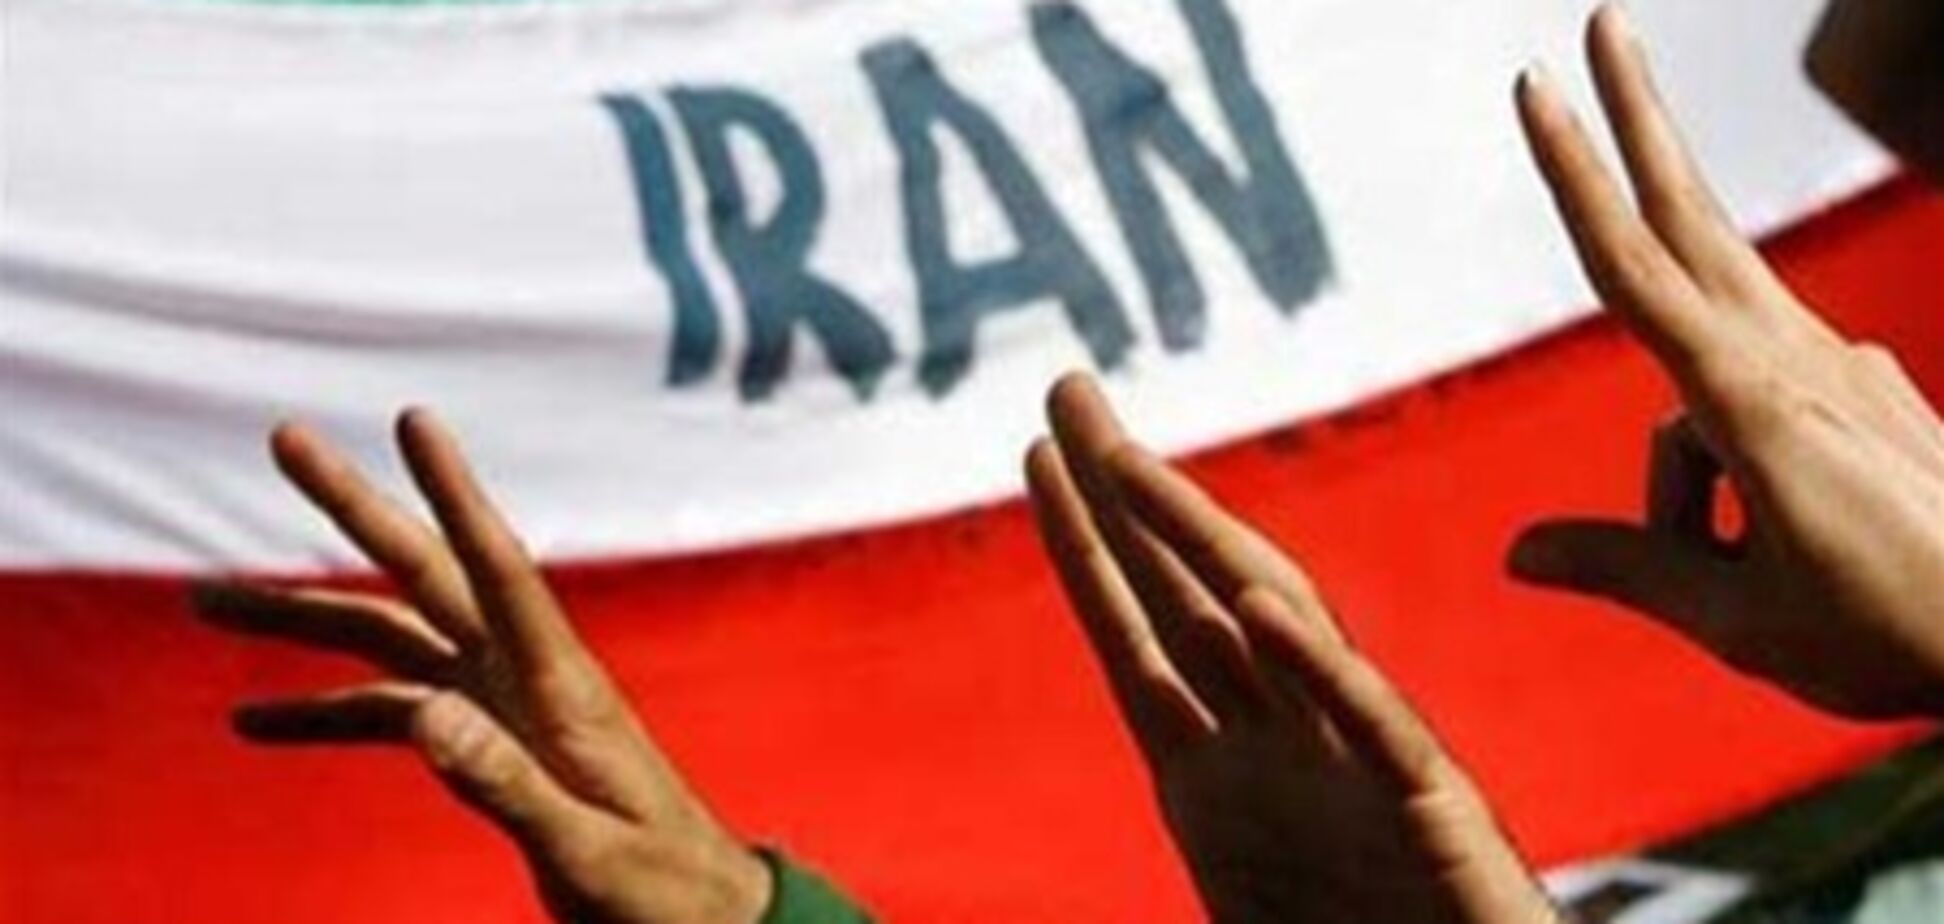 Христиане в Иране подвергаются гонениям - ООН